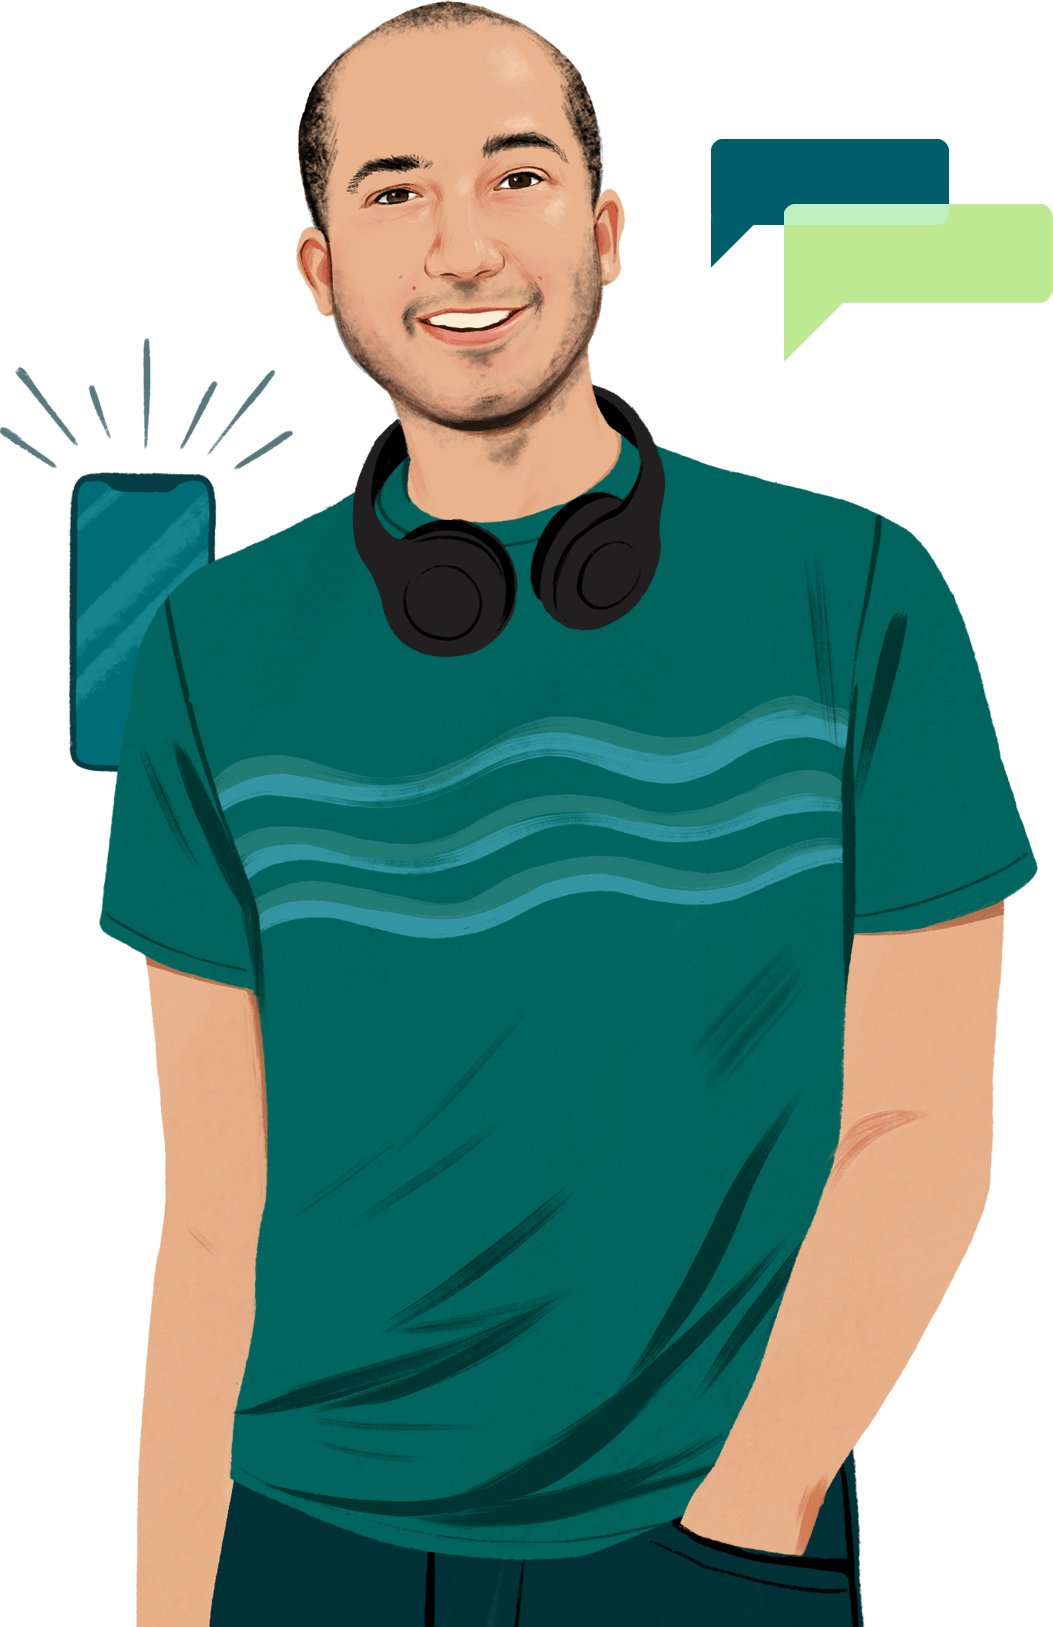 Illustriertes Porträt von Chris, der Kopfhörer um den Hals trägt und lächelt. Ein illustriertes iPhone kommt ins Bild und sendet sichtbare Schallwellen aus.